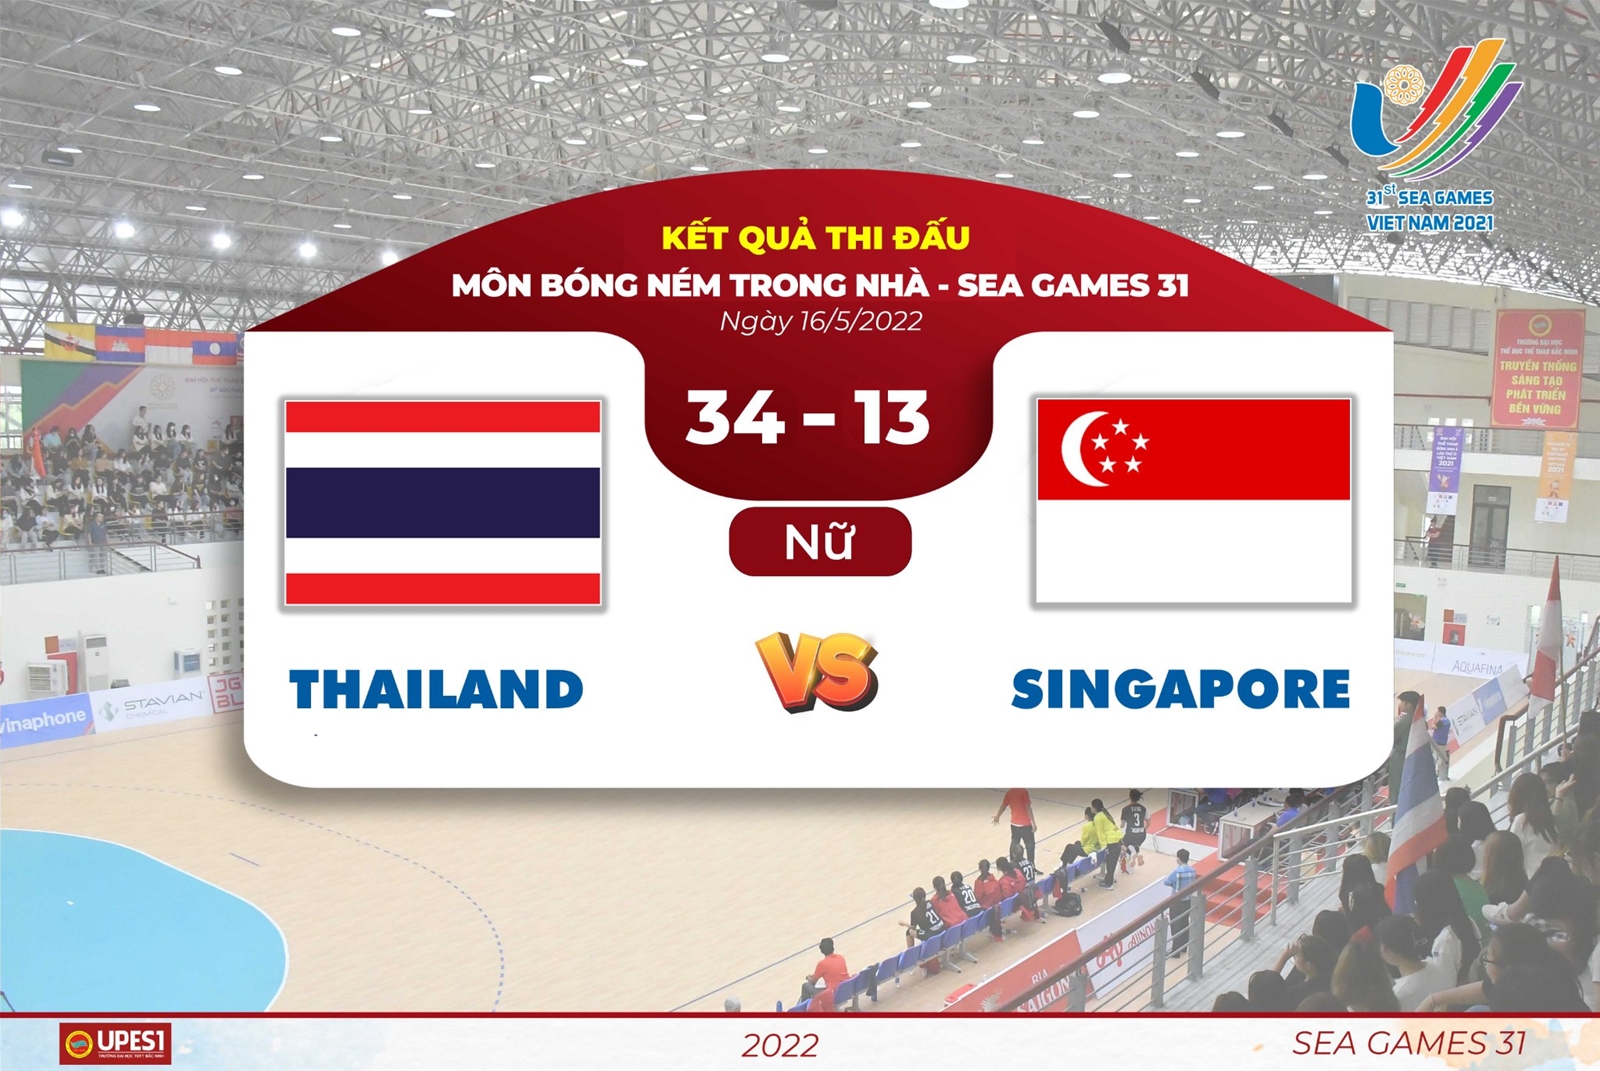 Thailand – Singapore: Đội nữ thắng áp đảo 34-13, đội nam hòa 29-29 là kết quả ngày thi đấu thứ 2 nội dung Bóng ném trong nhà trong khuôn khổ SEA Games 31